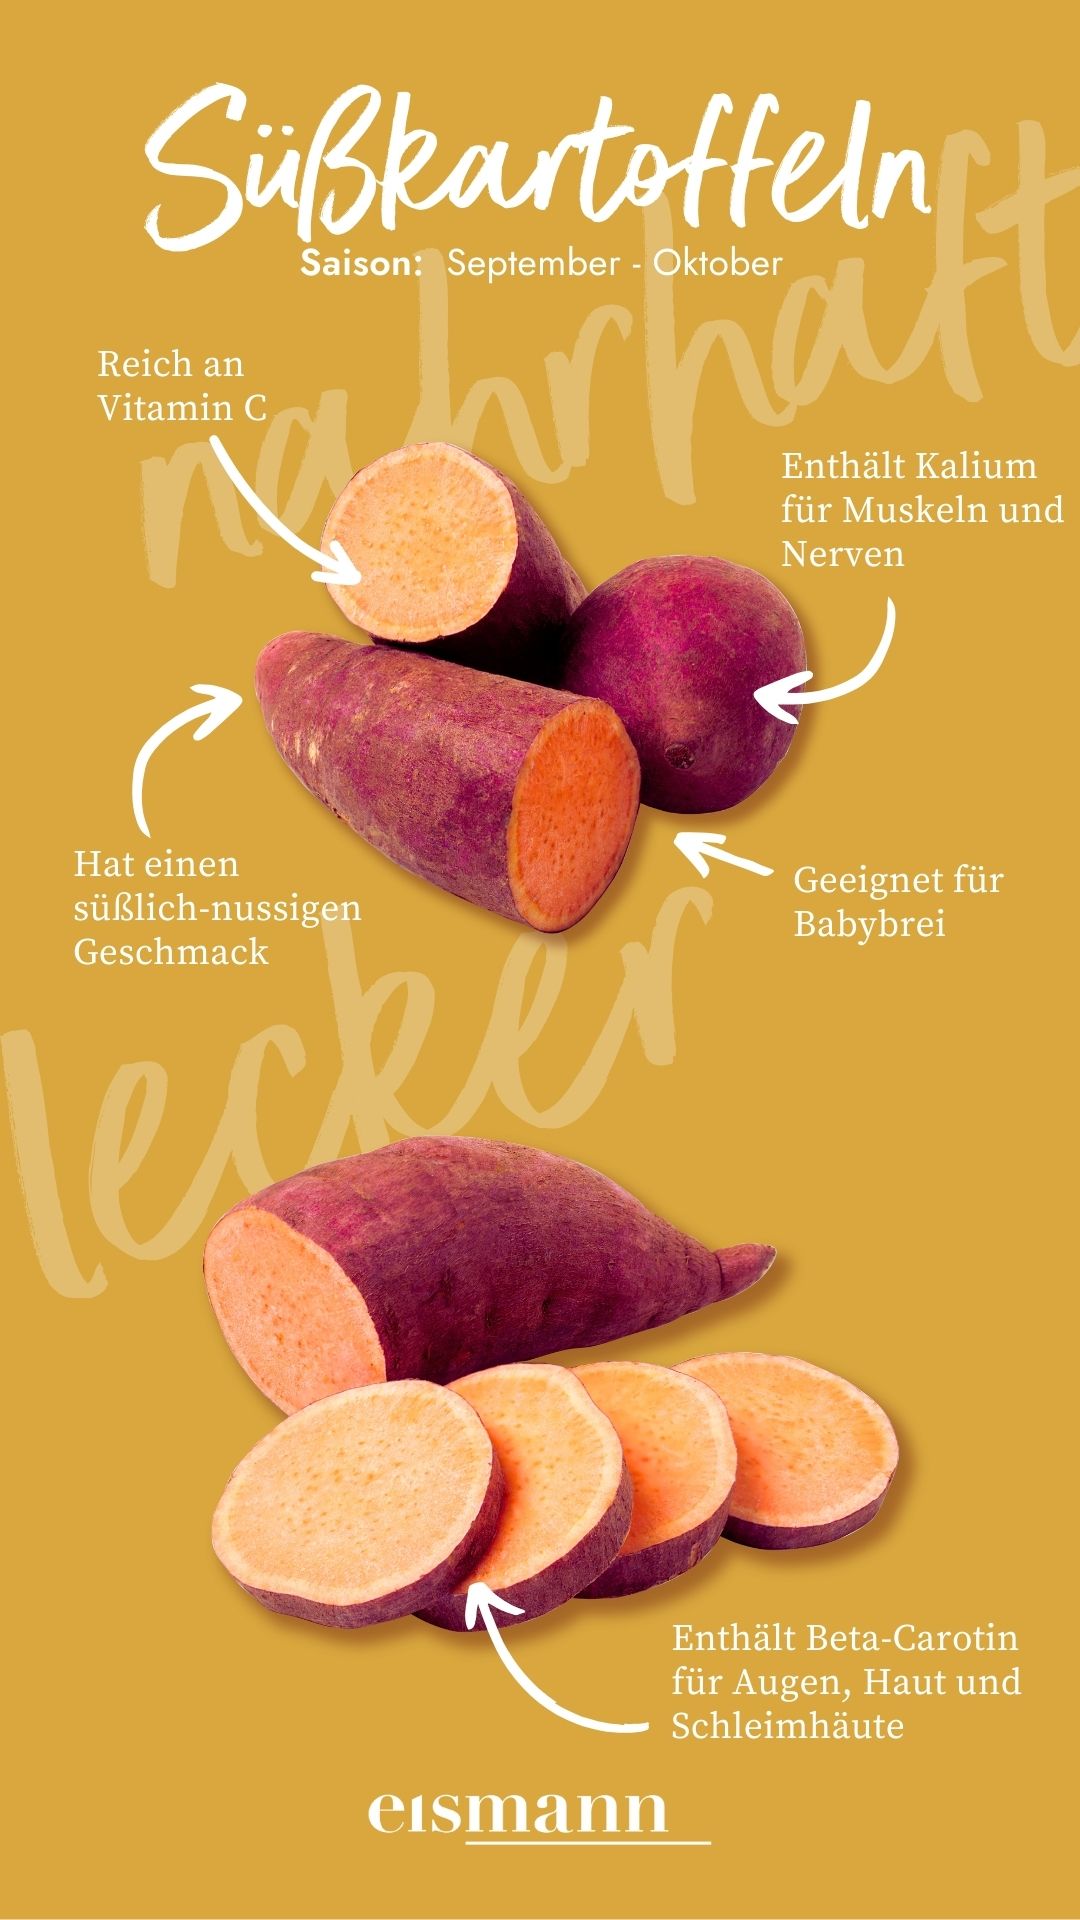 Süßkartoffeln - Eigenschaften, Saison und Vorteile in der Ernährung